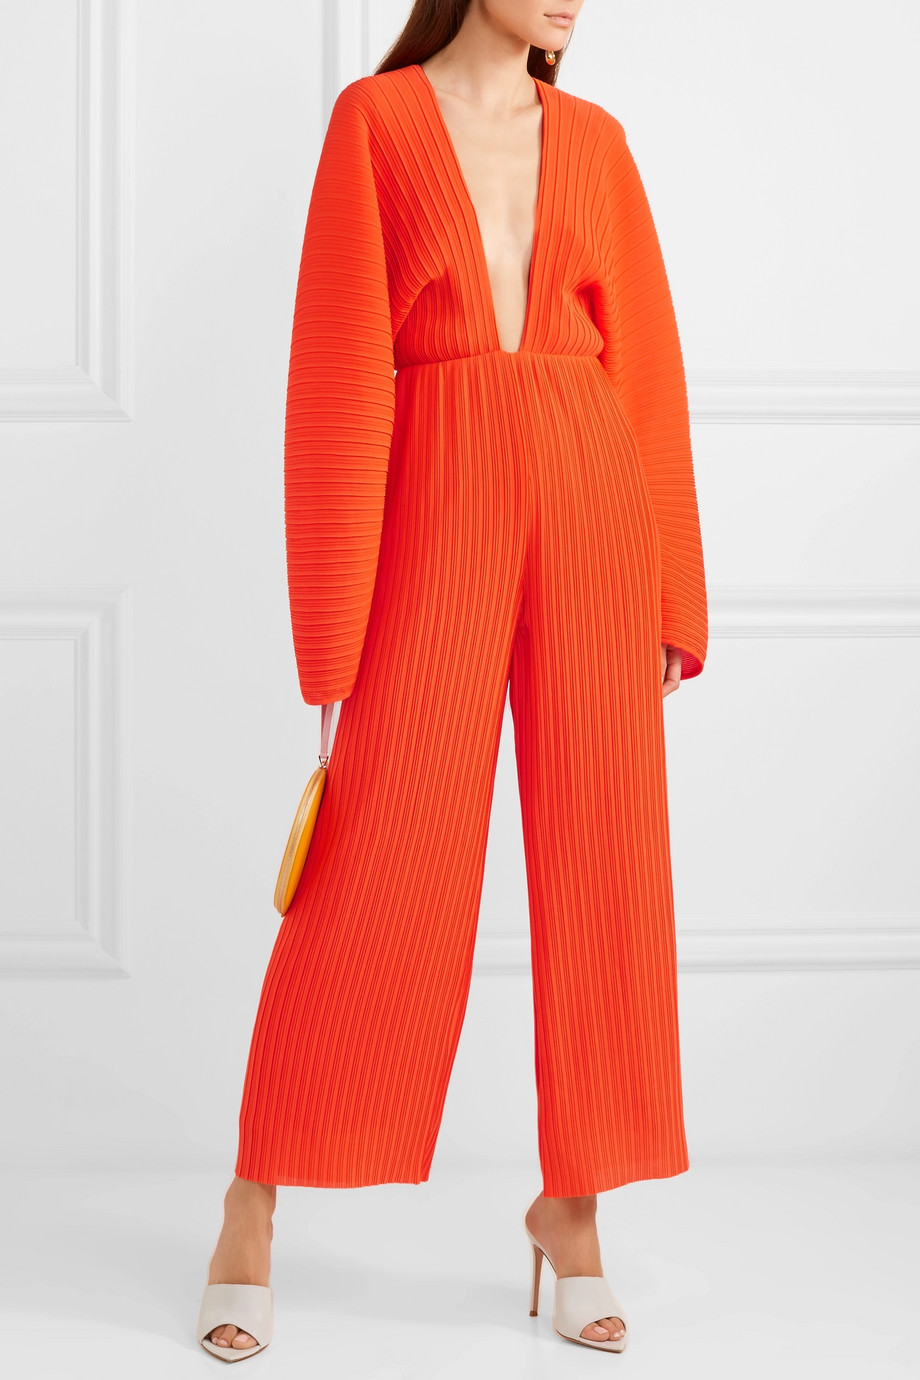 orange jumpsuit outfit